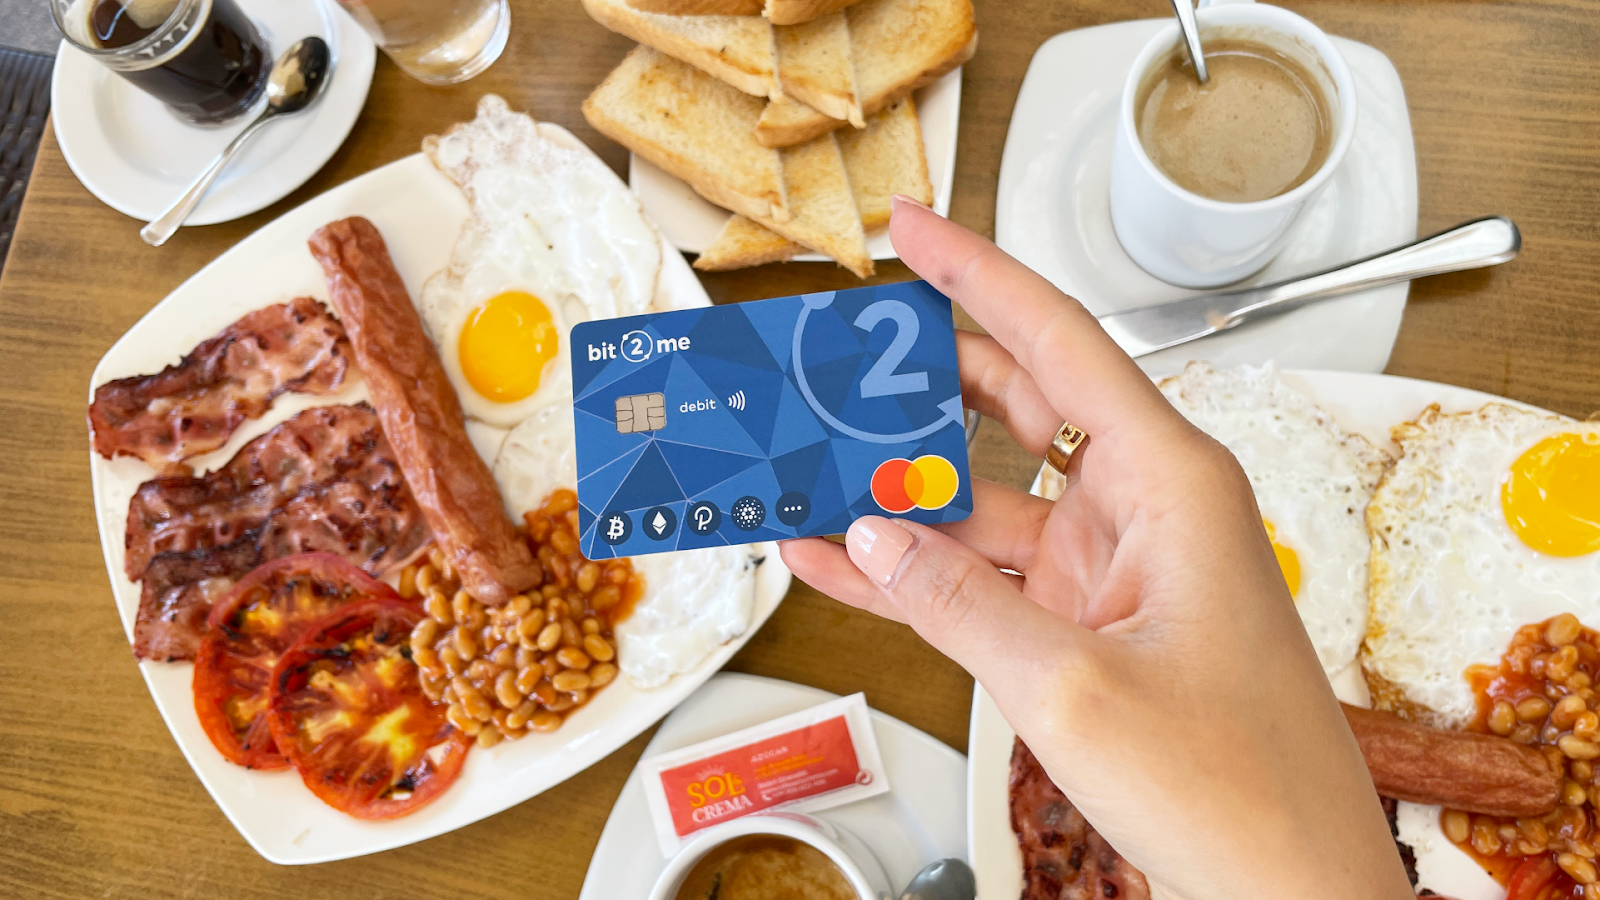 Španjolska burza Bit2Me lansira debitnu karticu s programom povrata novca od 9% - 1